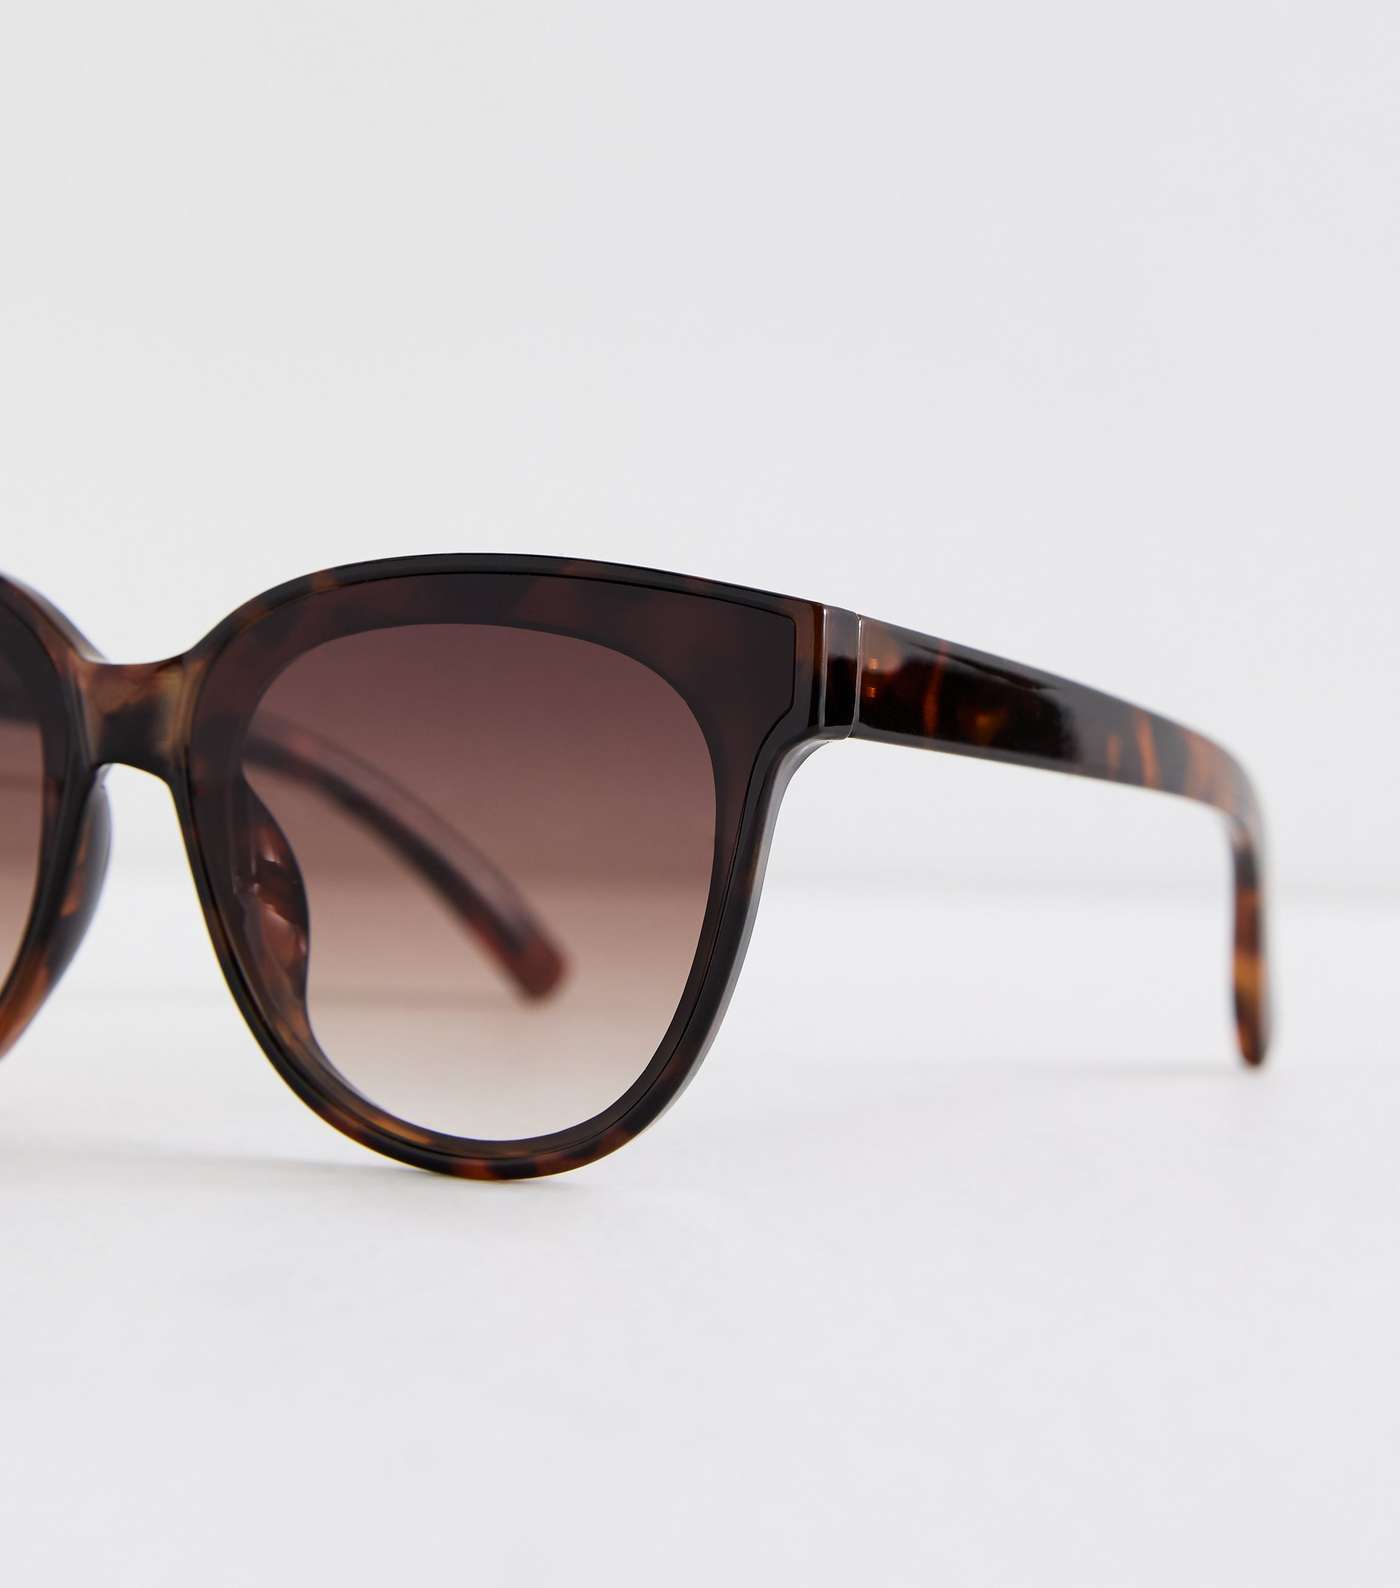 Dark Brown Tortoiseshell Effect Round Frame Sunglasses Image 3